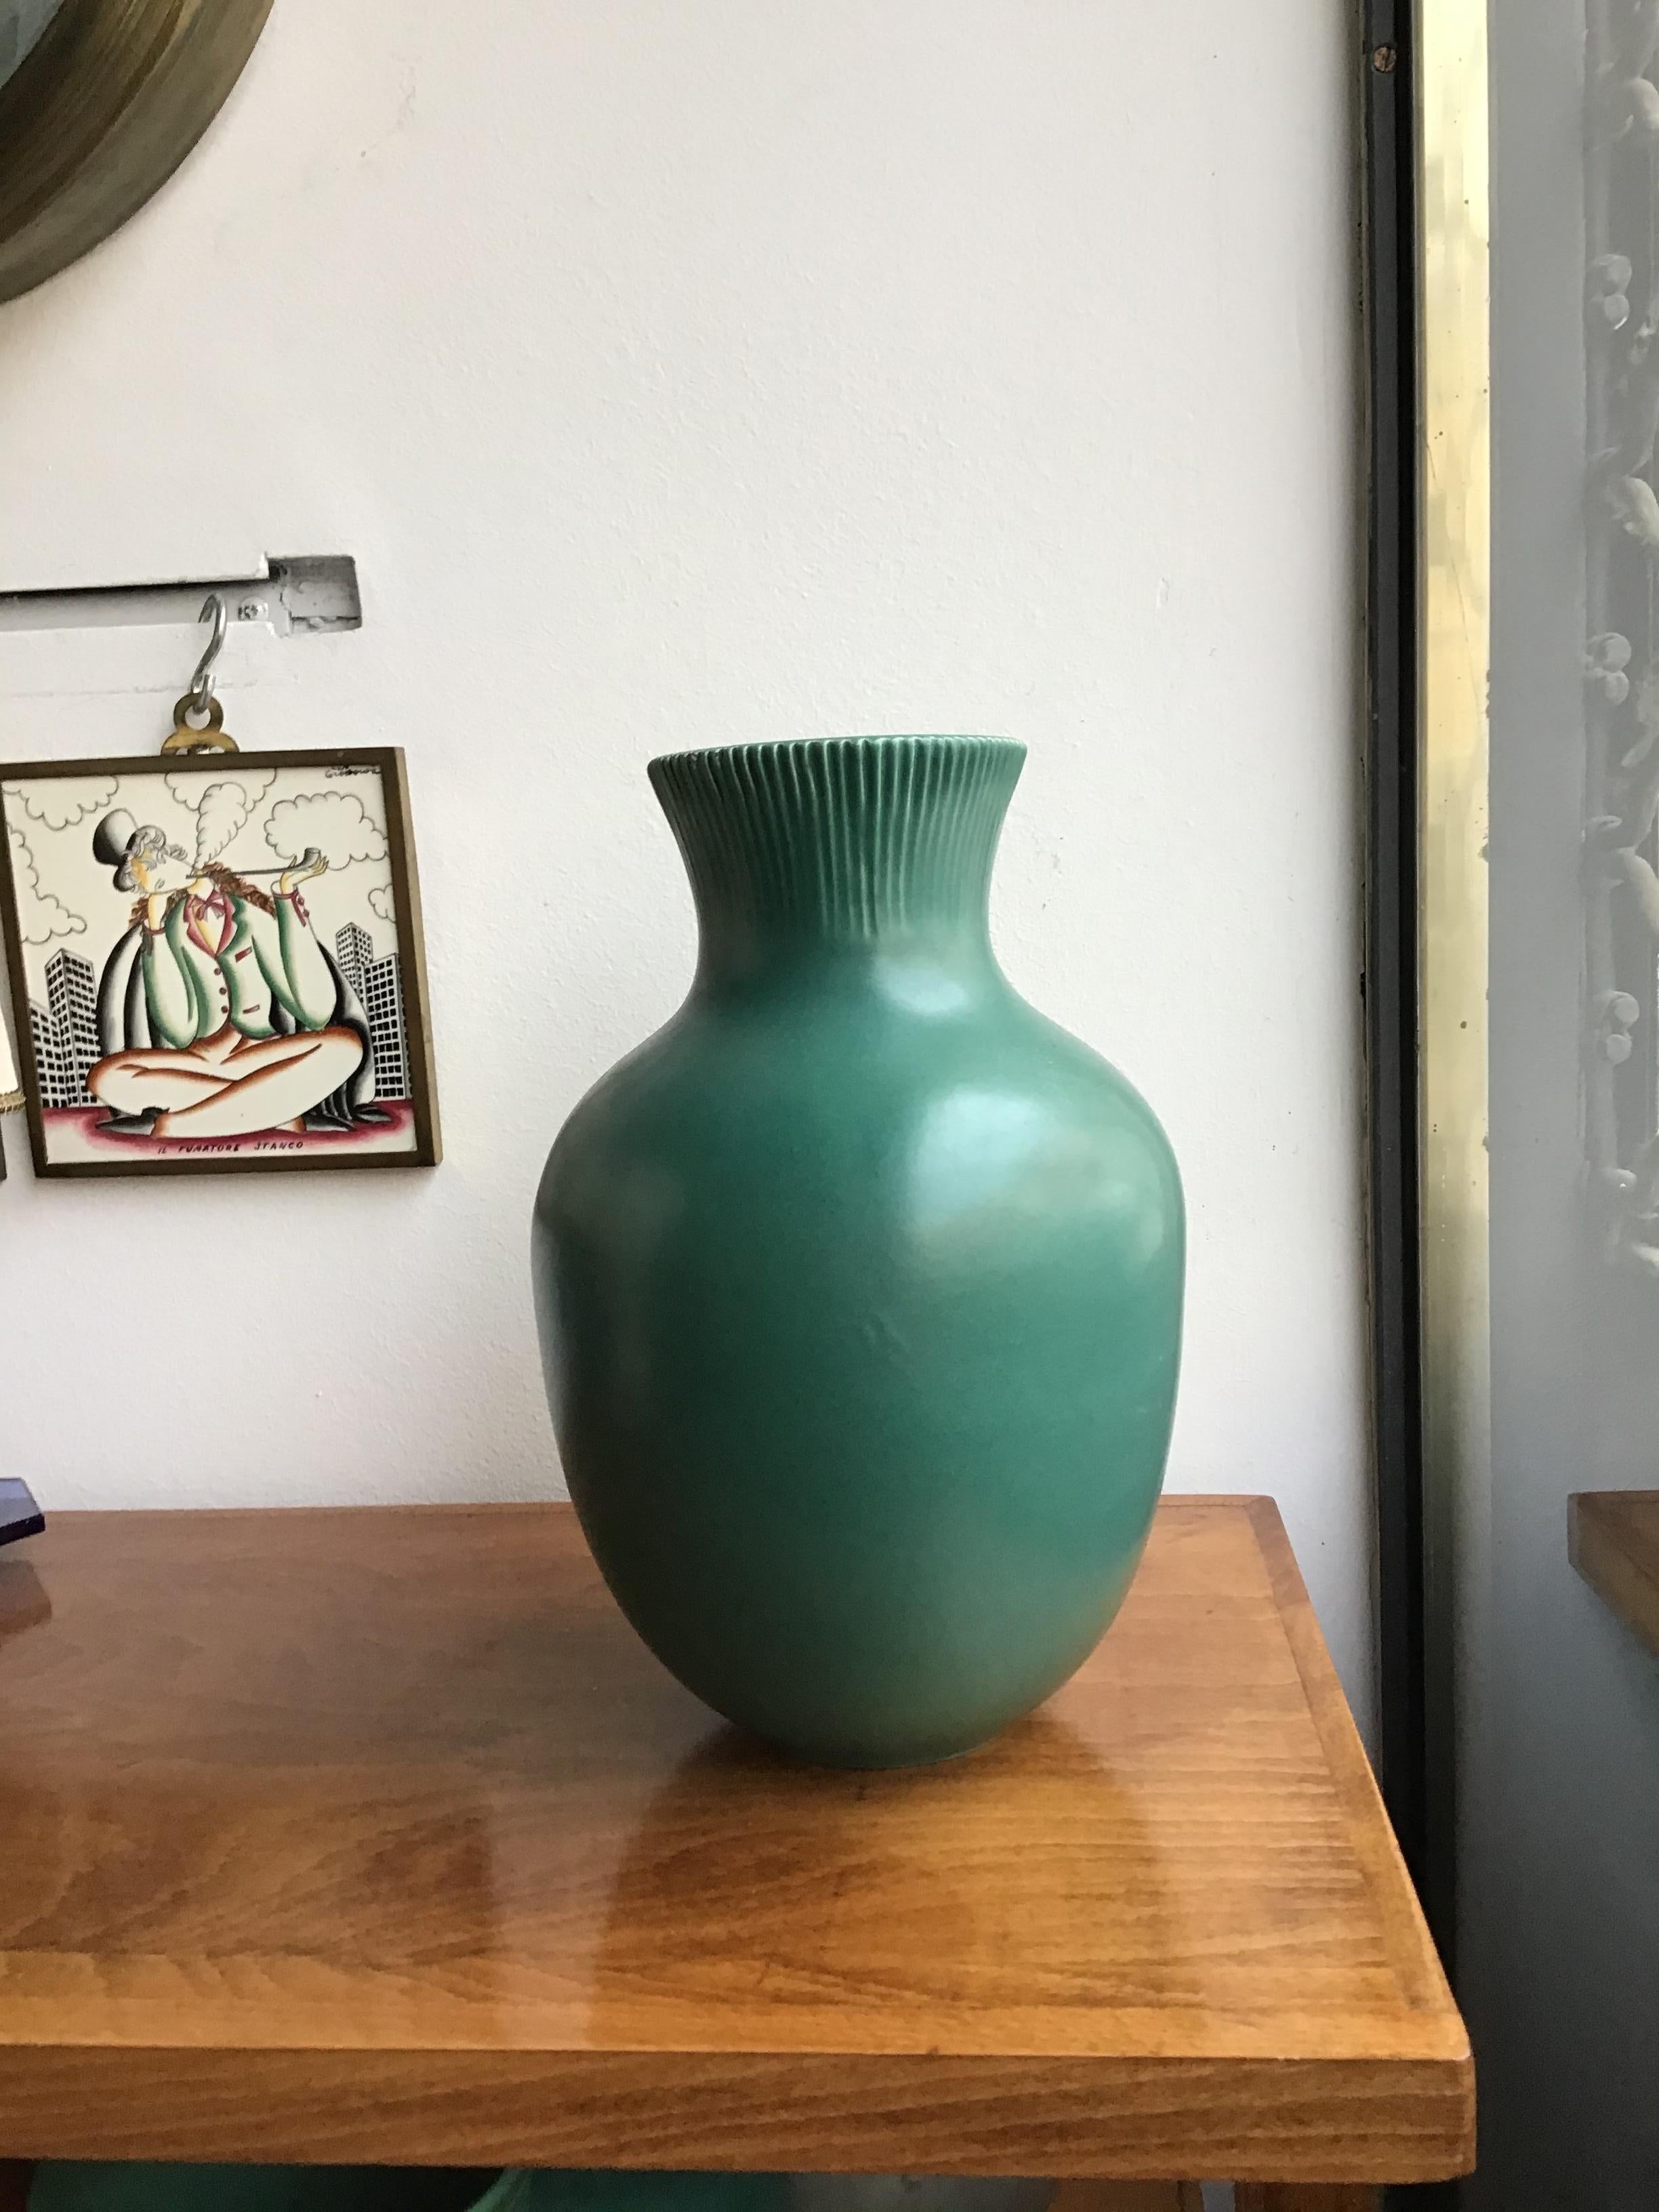 Richard Ginori Giovanni Gariboldi Vase Green Ceramic 1950 Italy  1